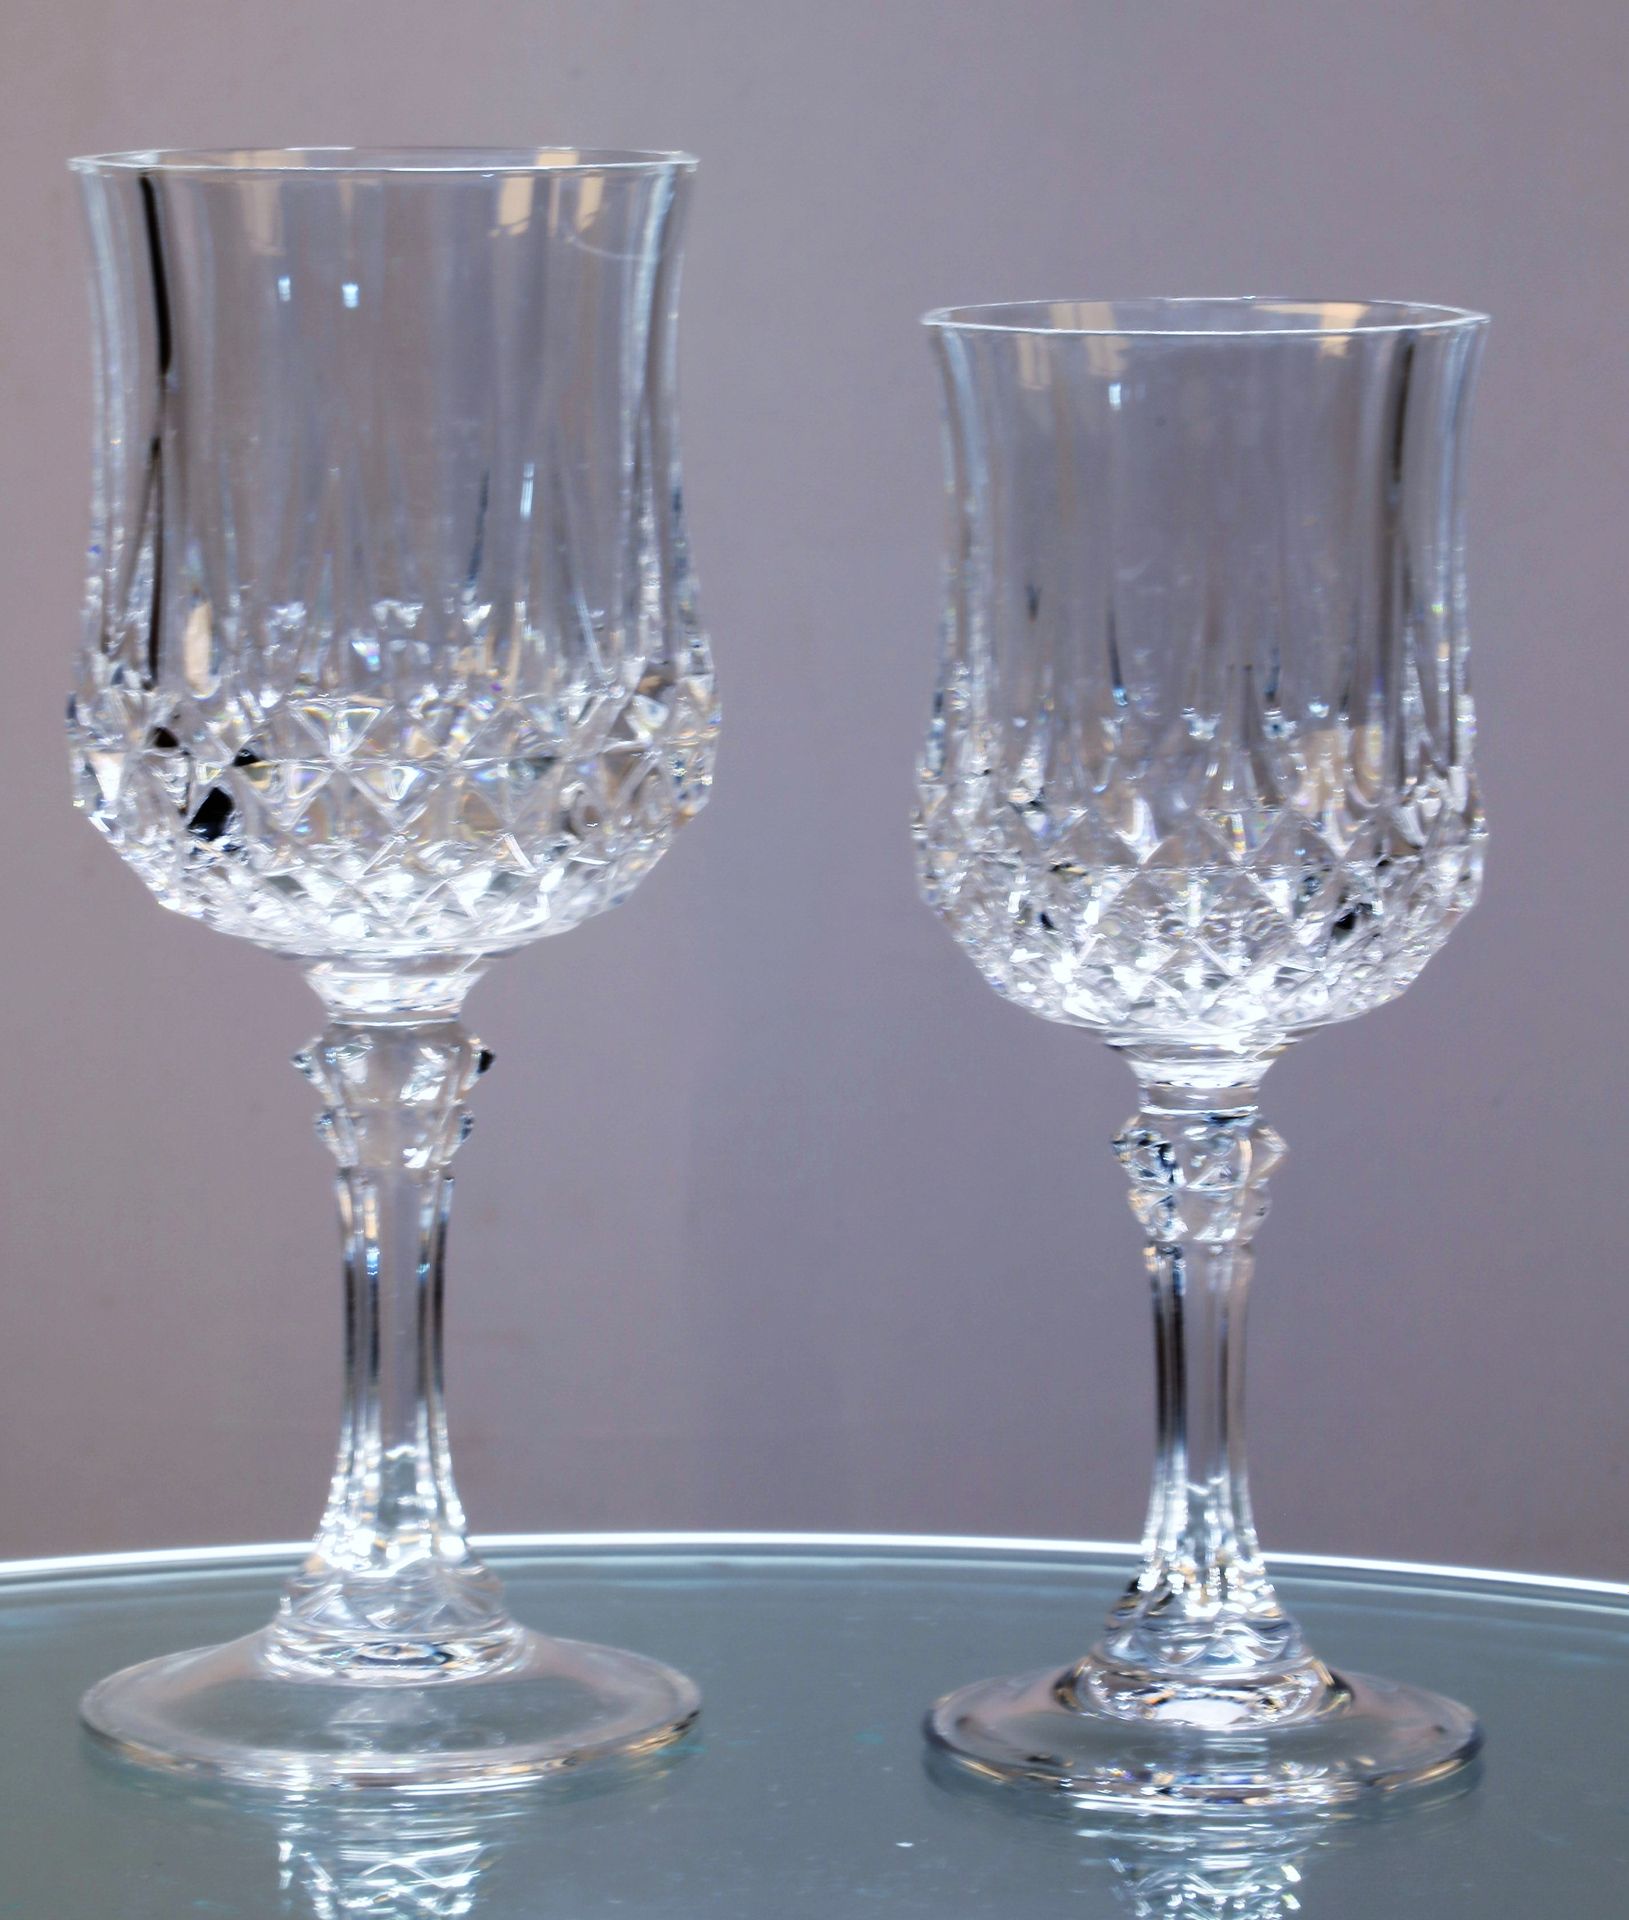 Null 11 water glasses ht: 19 cm, 10 wine glasses ht: 17 cm,